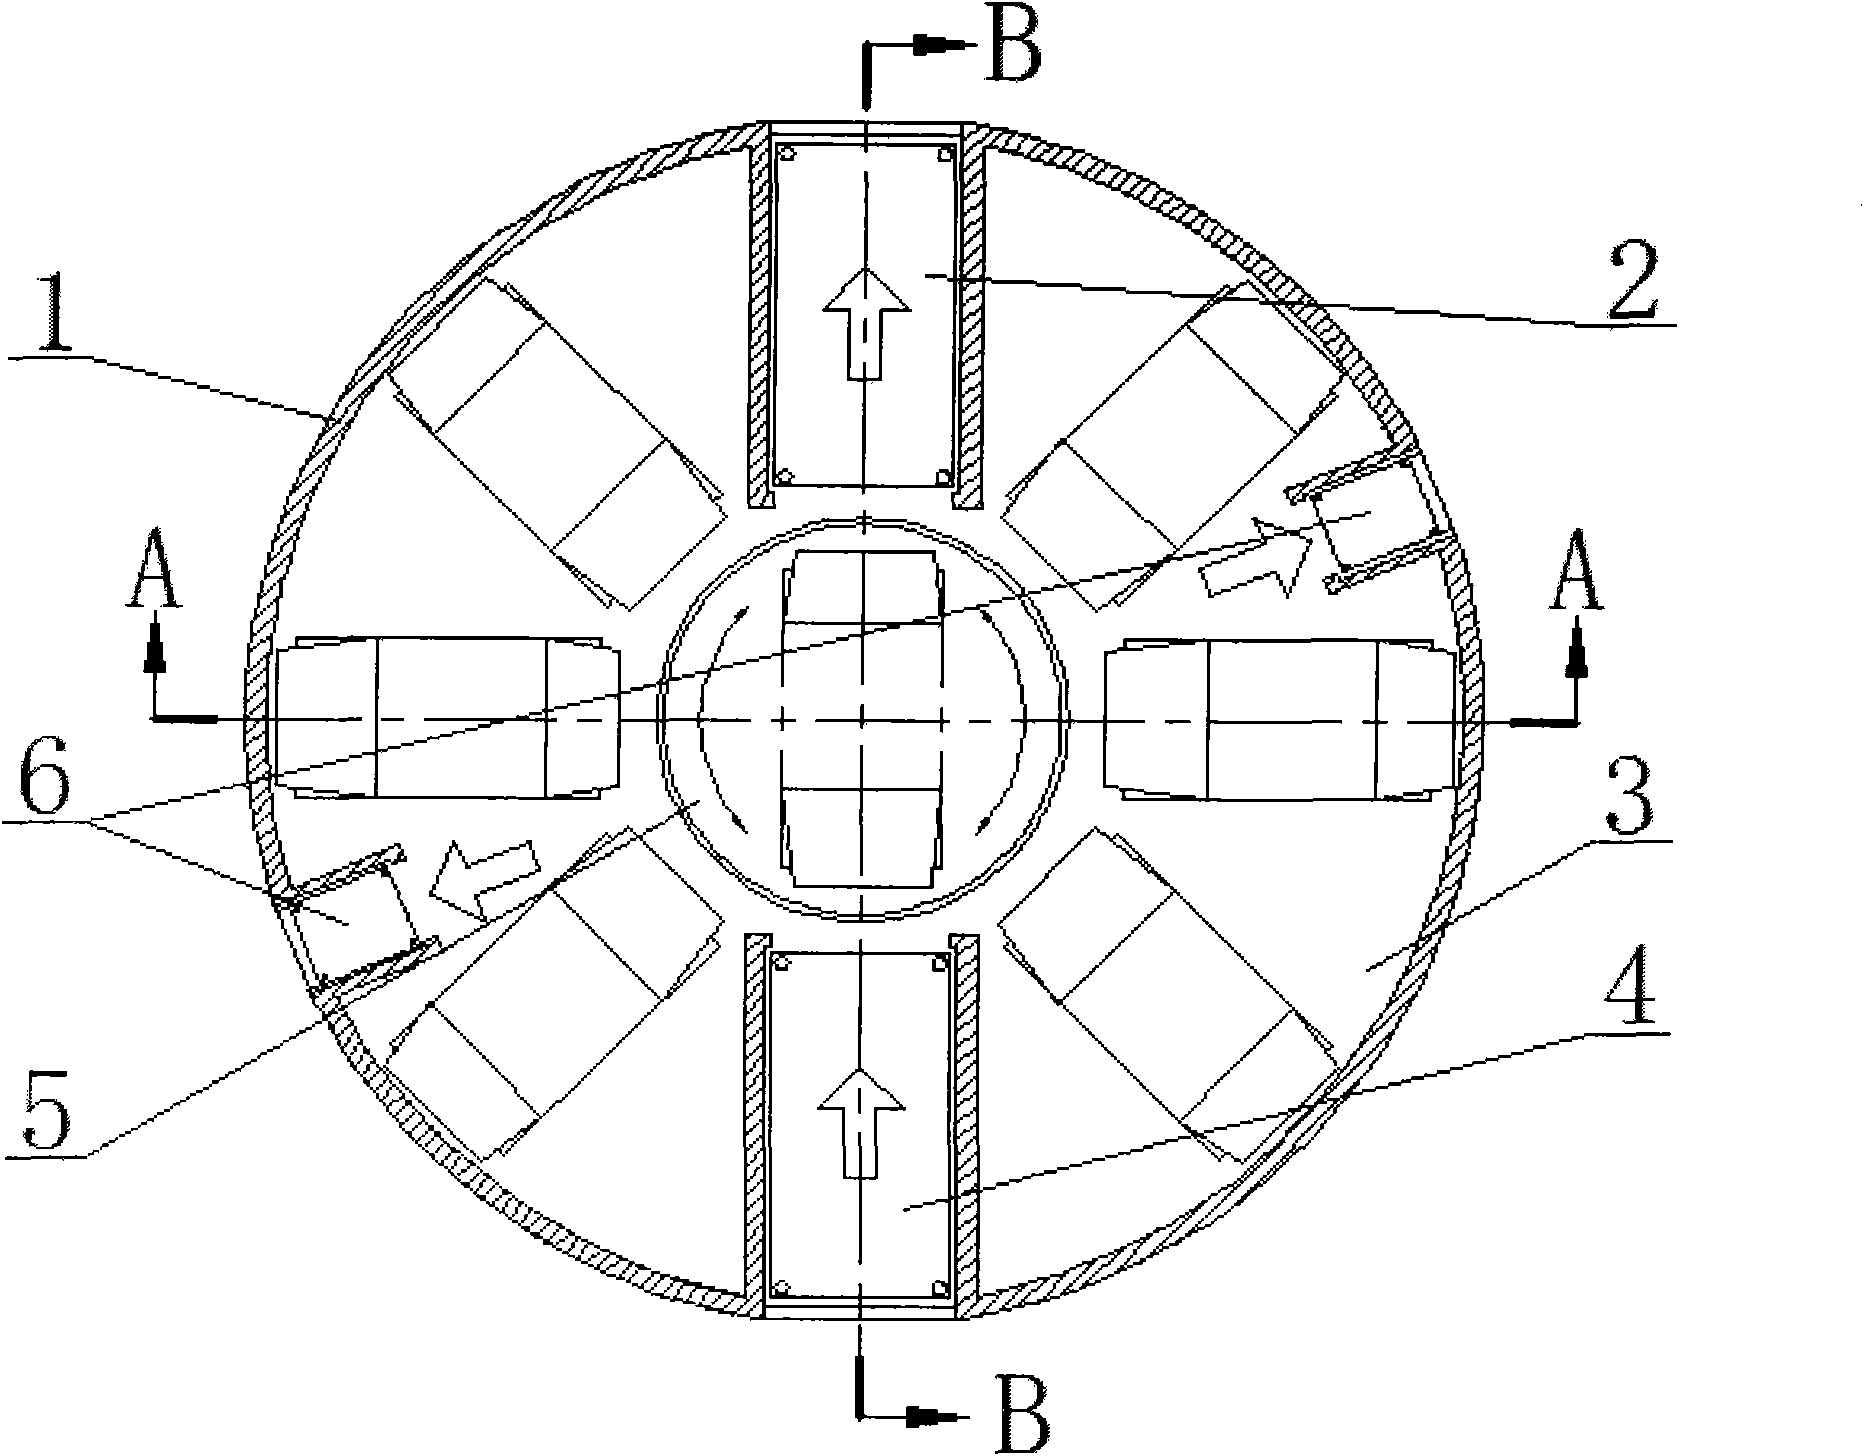 A high-rise circular three-dimensional garage